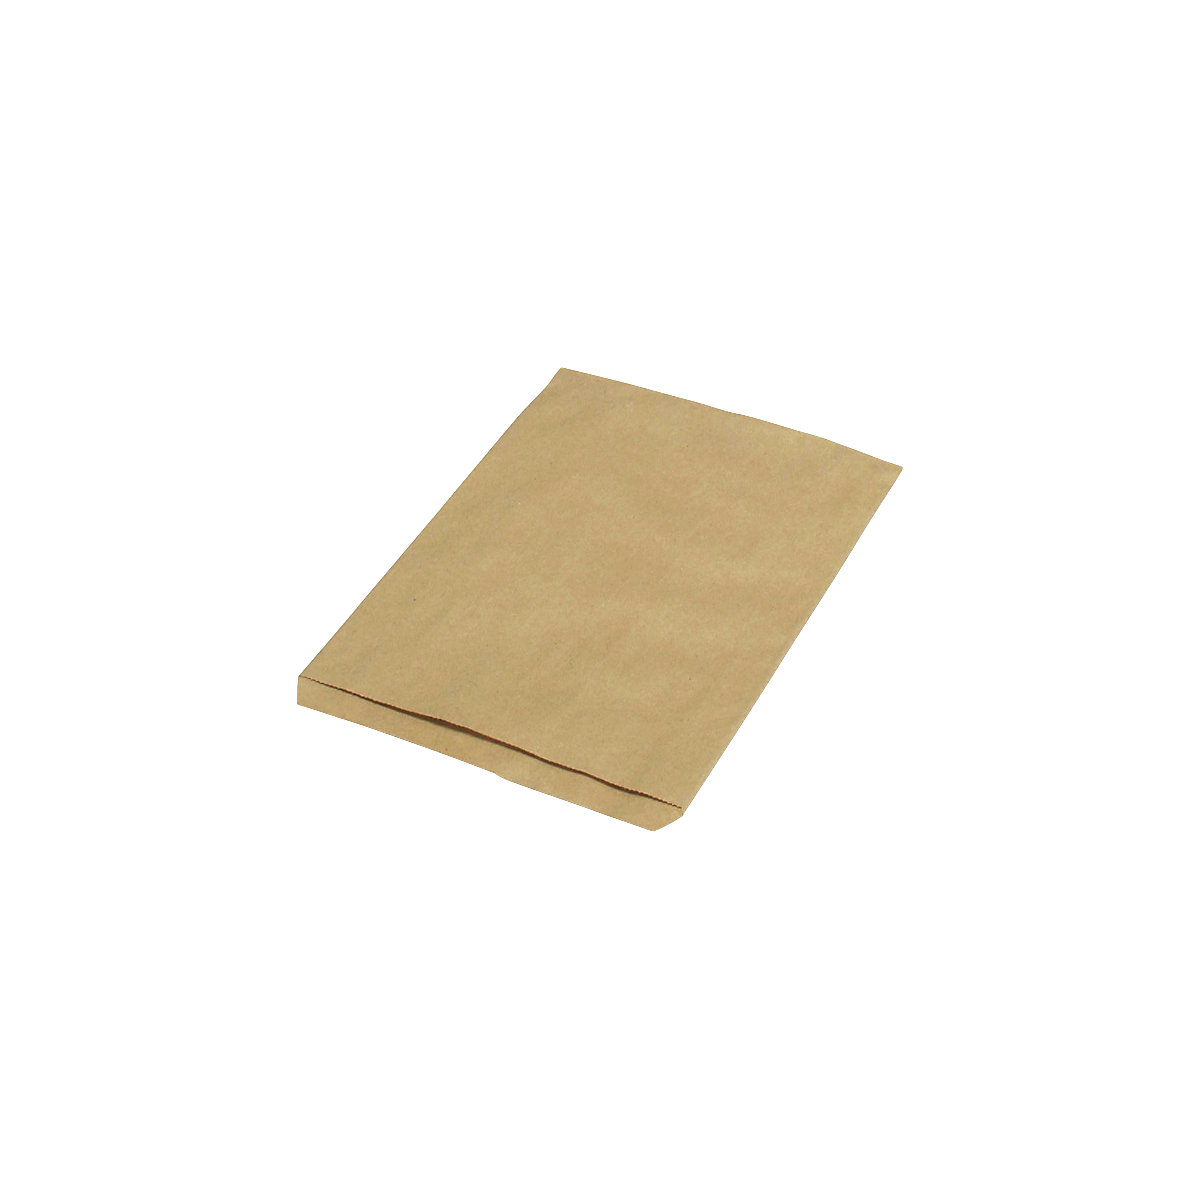 Sacchetti piatti – terra, in carta riciclata, lungh. x largh. 240 x 165 mm, conf. da 1000 pz., a partire da 10 conf.-2